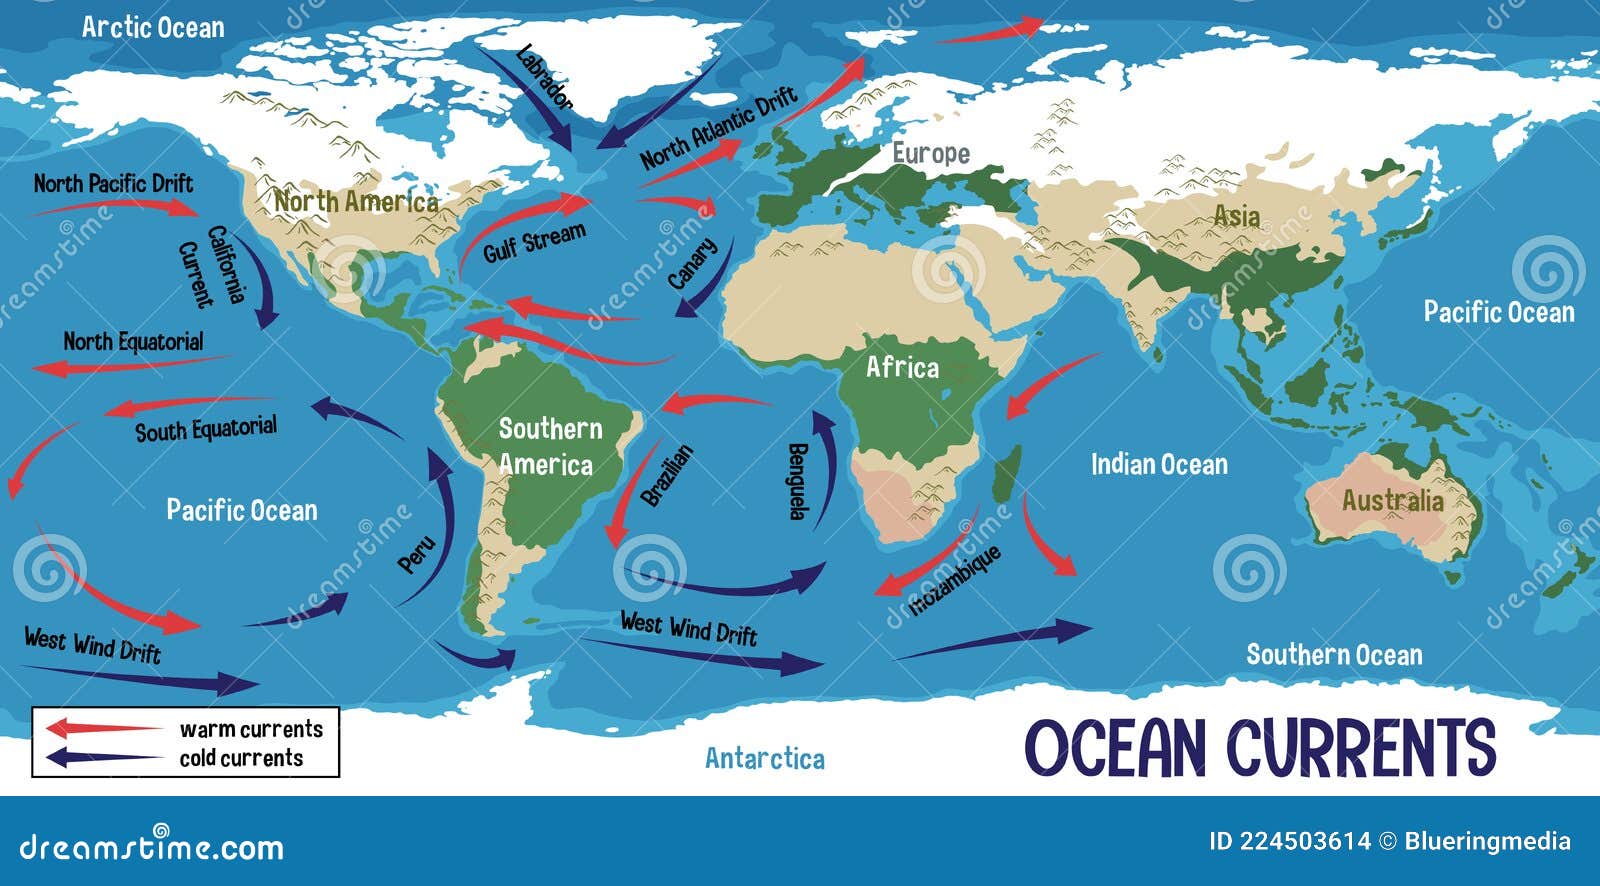 ocean currents